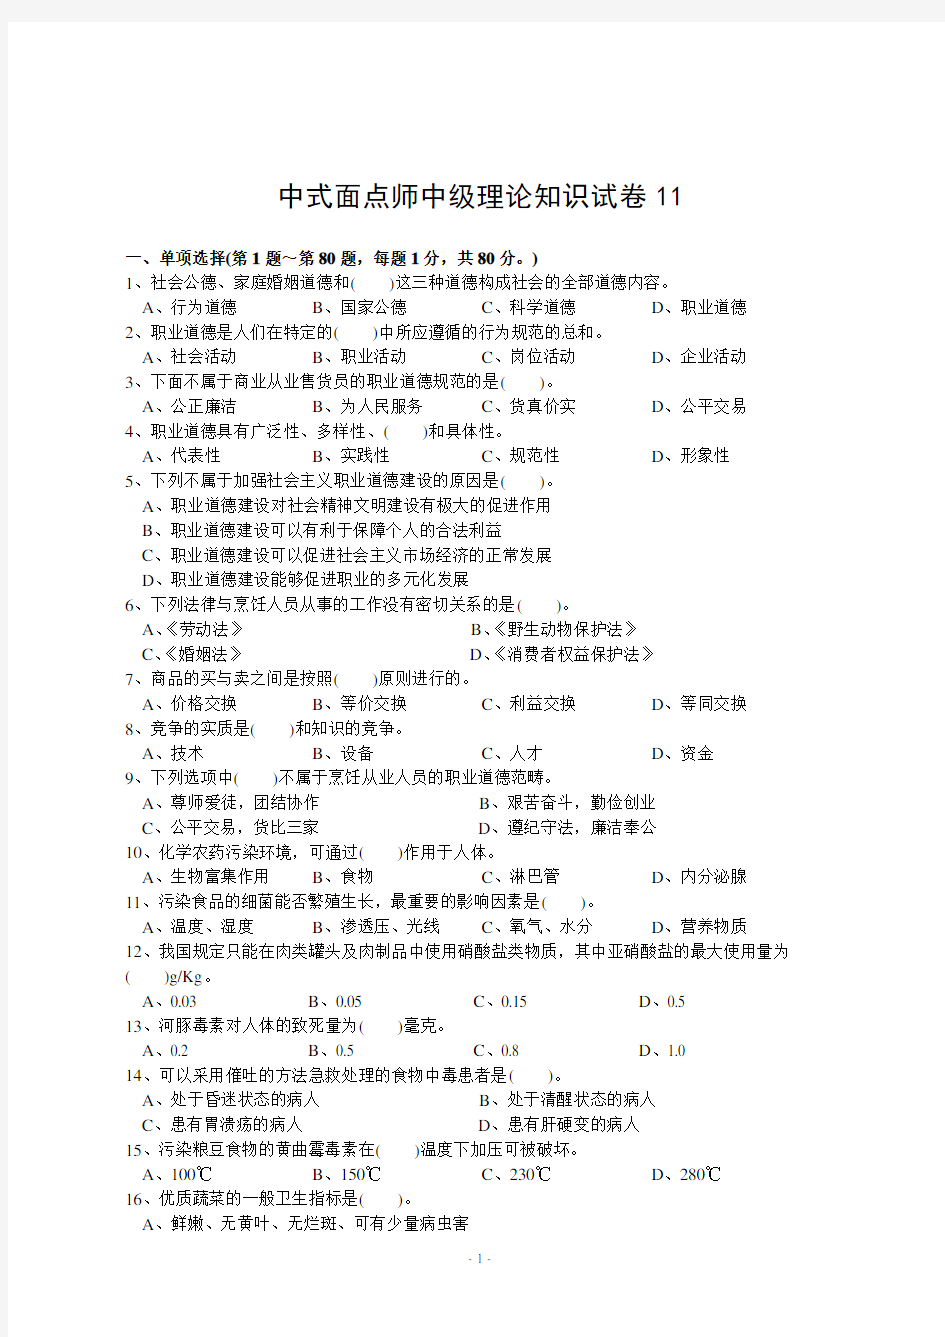 中式面点师中级理论知识试卷  第11套试卷模拟